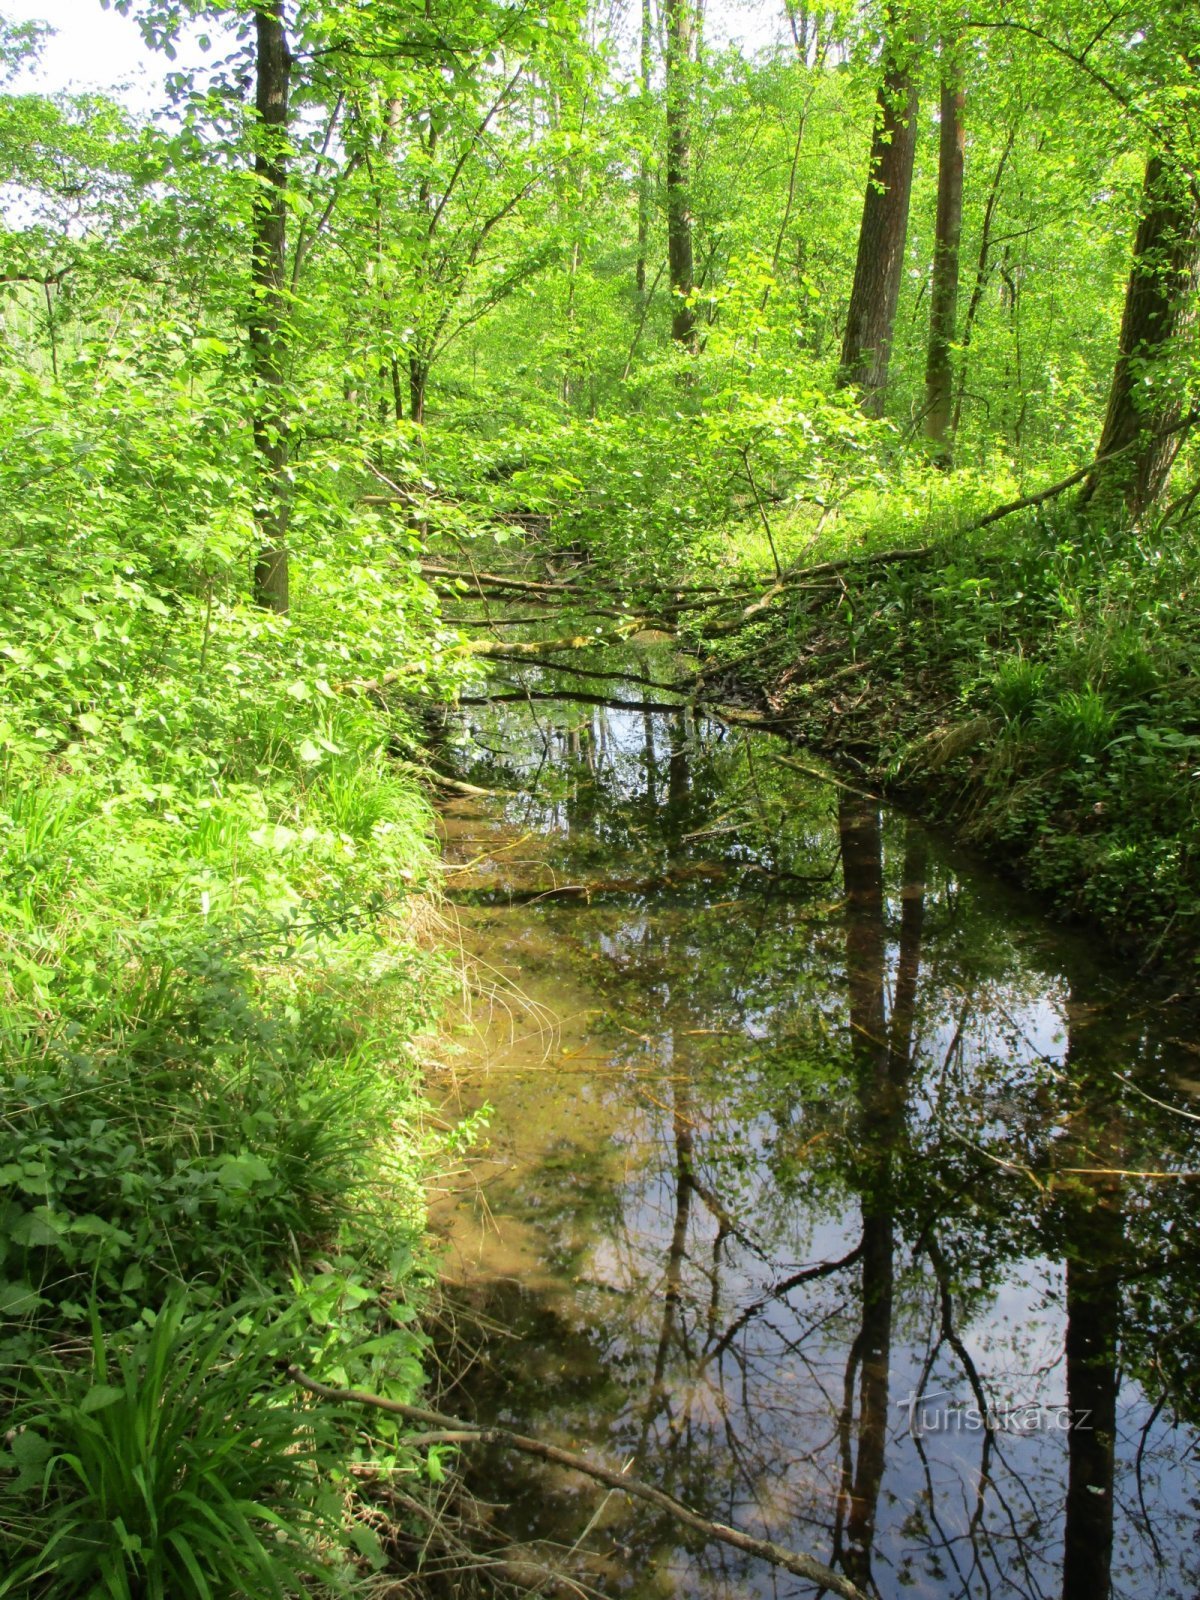 Nameless tributary of the Libníkovický stream in Kaltouz (Černilov, 11.5.2020/XNUMX/XNUMX)